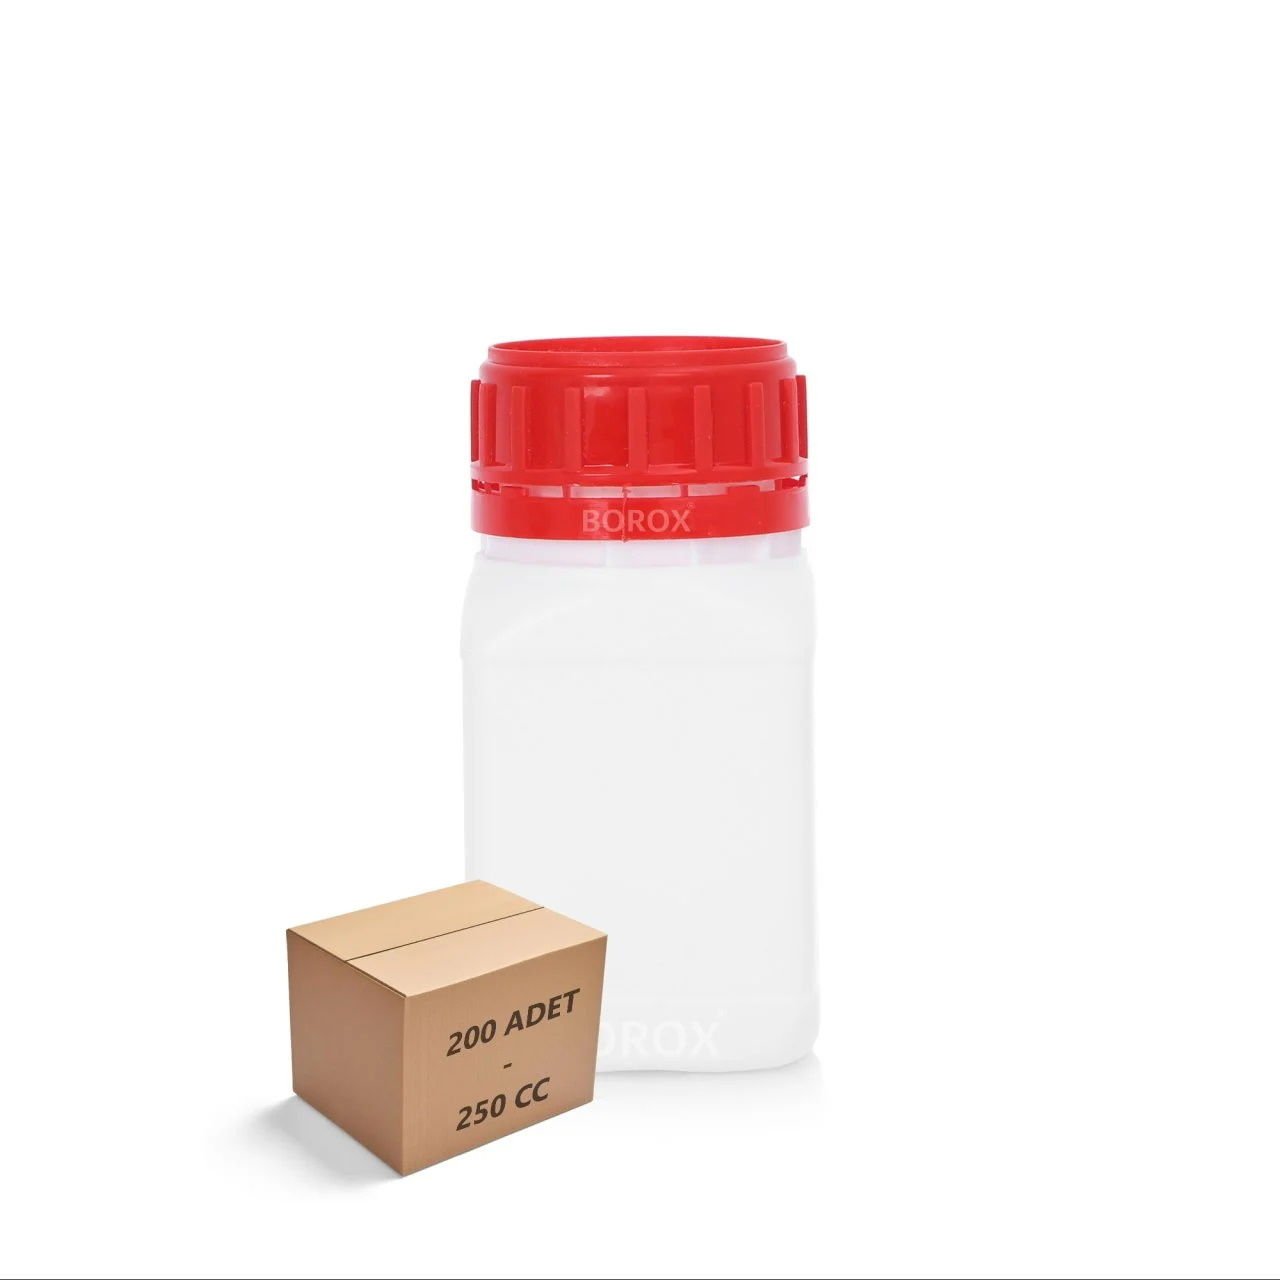 Borox Plastik Kare Şişe 250 ml - Kırmızı Kapaklı Şişe 200 Adet